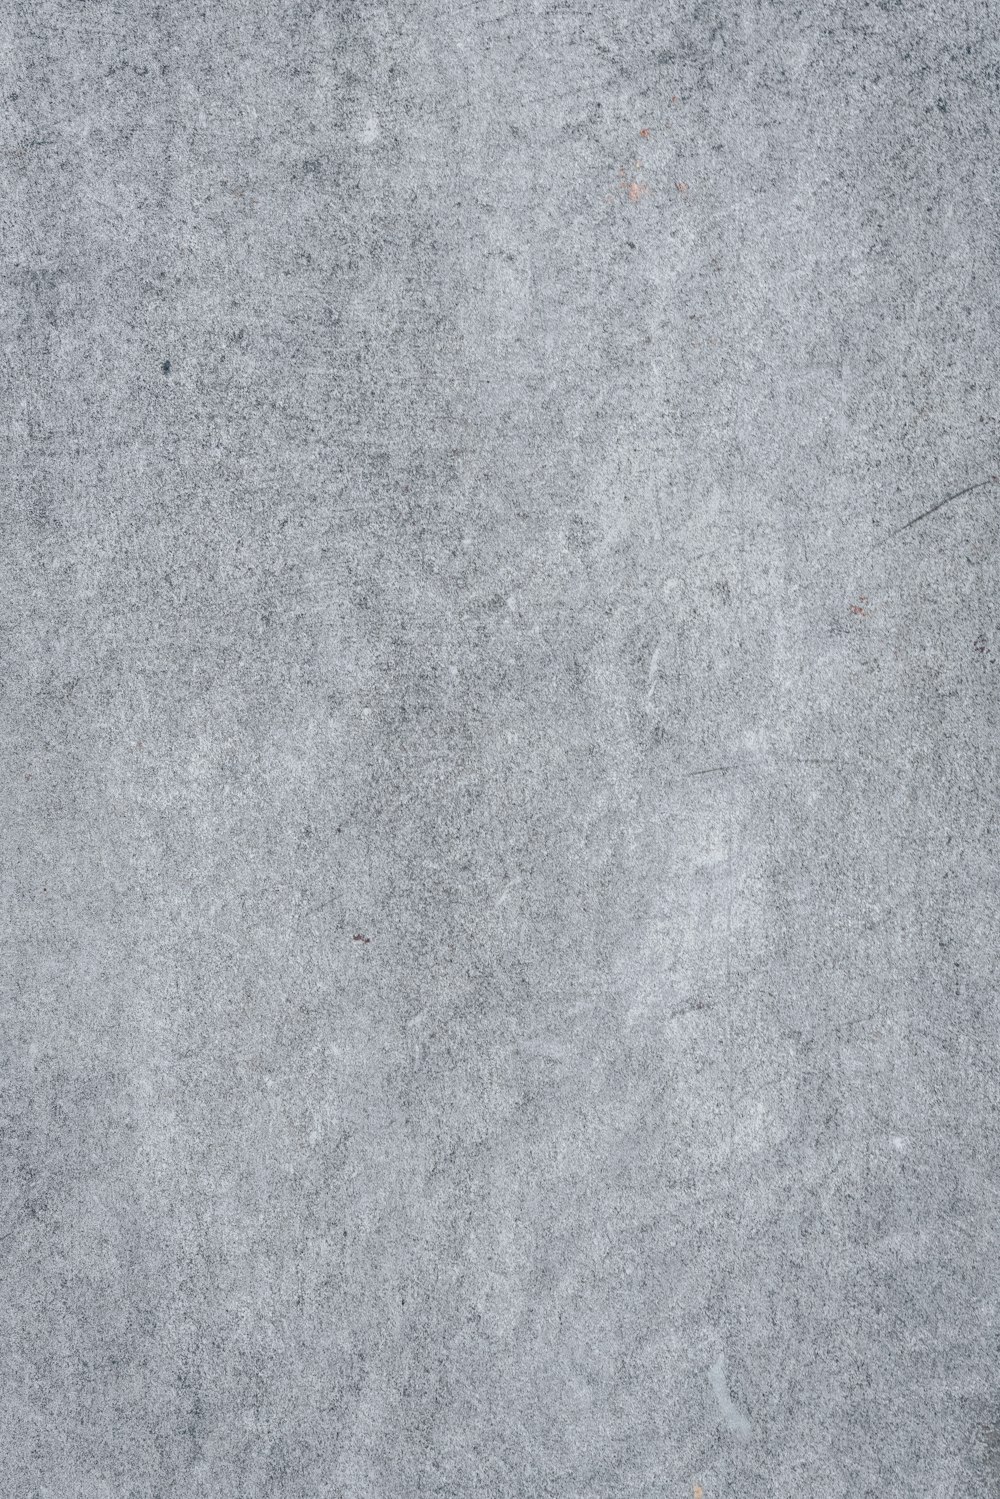 灰色のコンクリート表面のクローズアップ